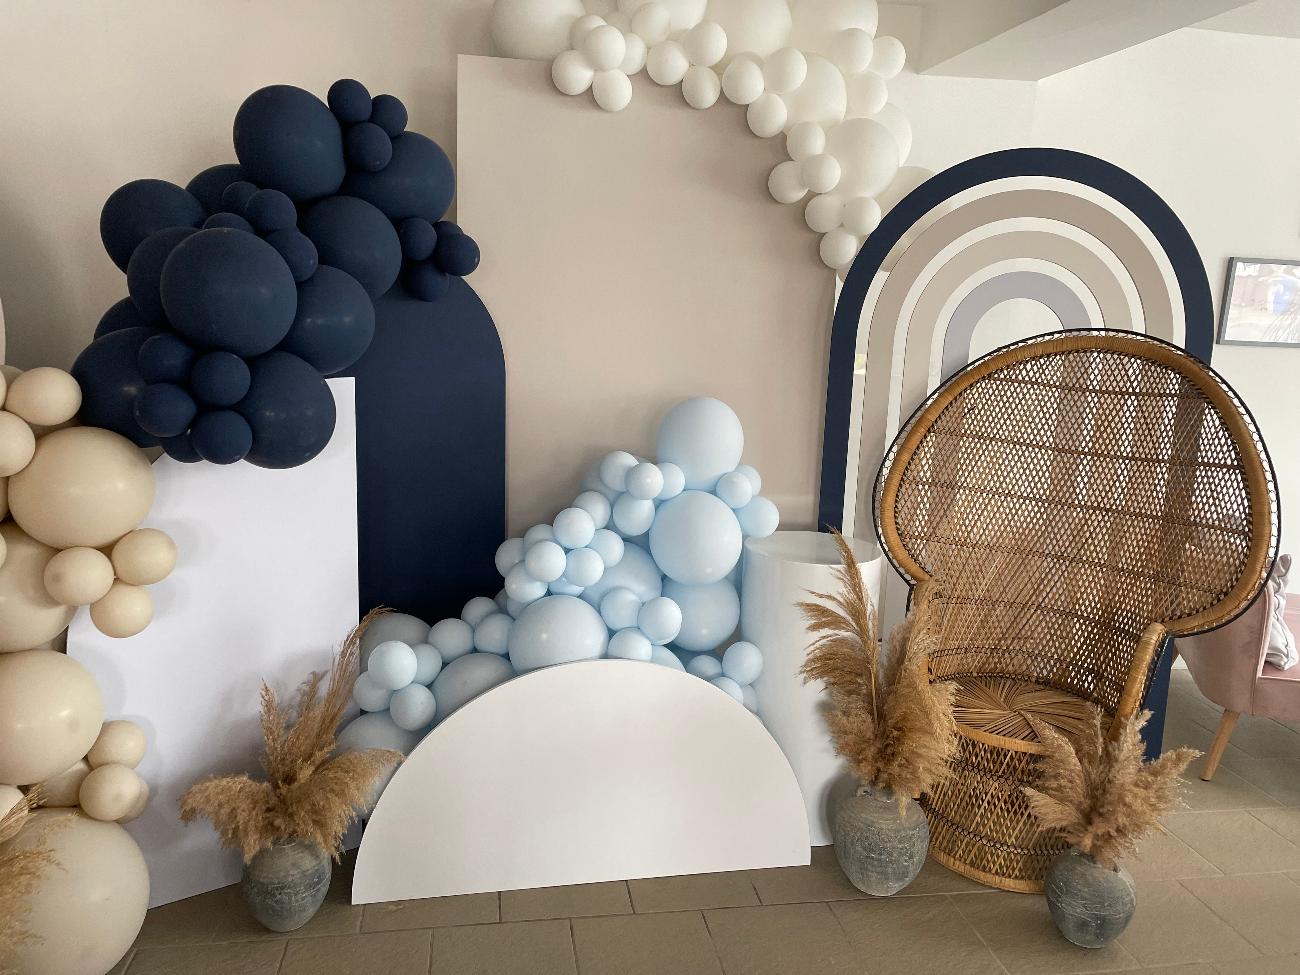 Balloon Installations | weddings northamptonshire gallery image 2